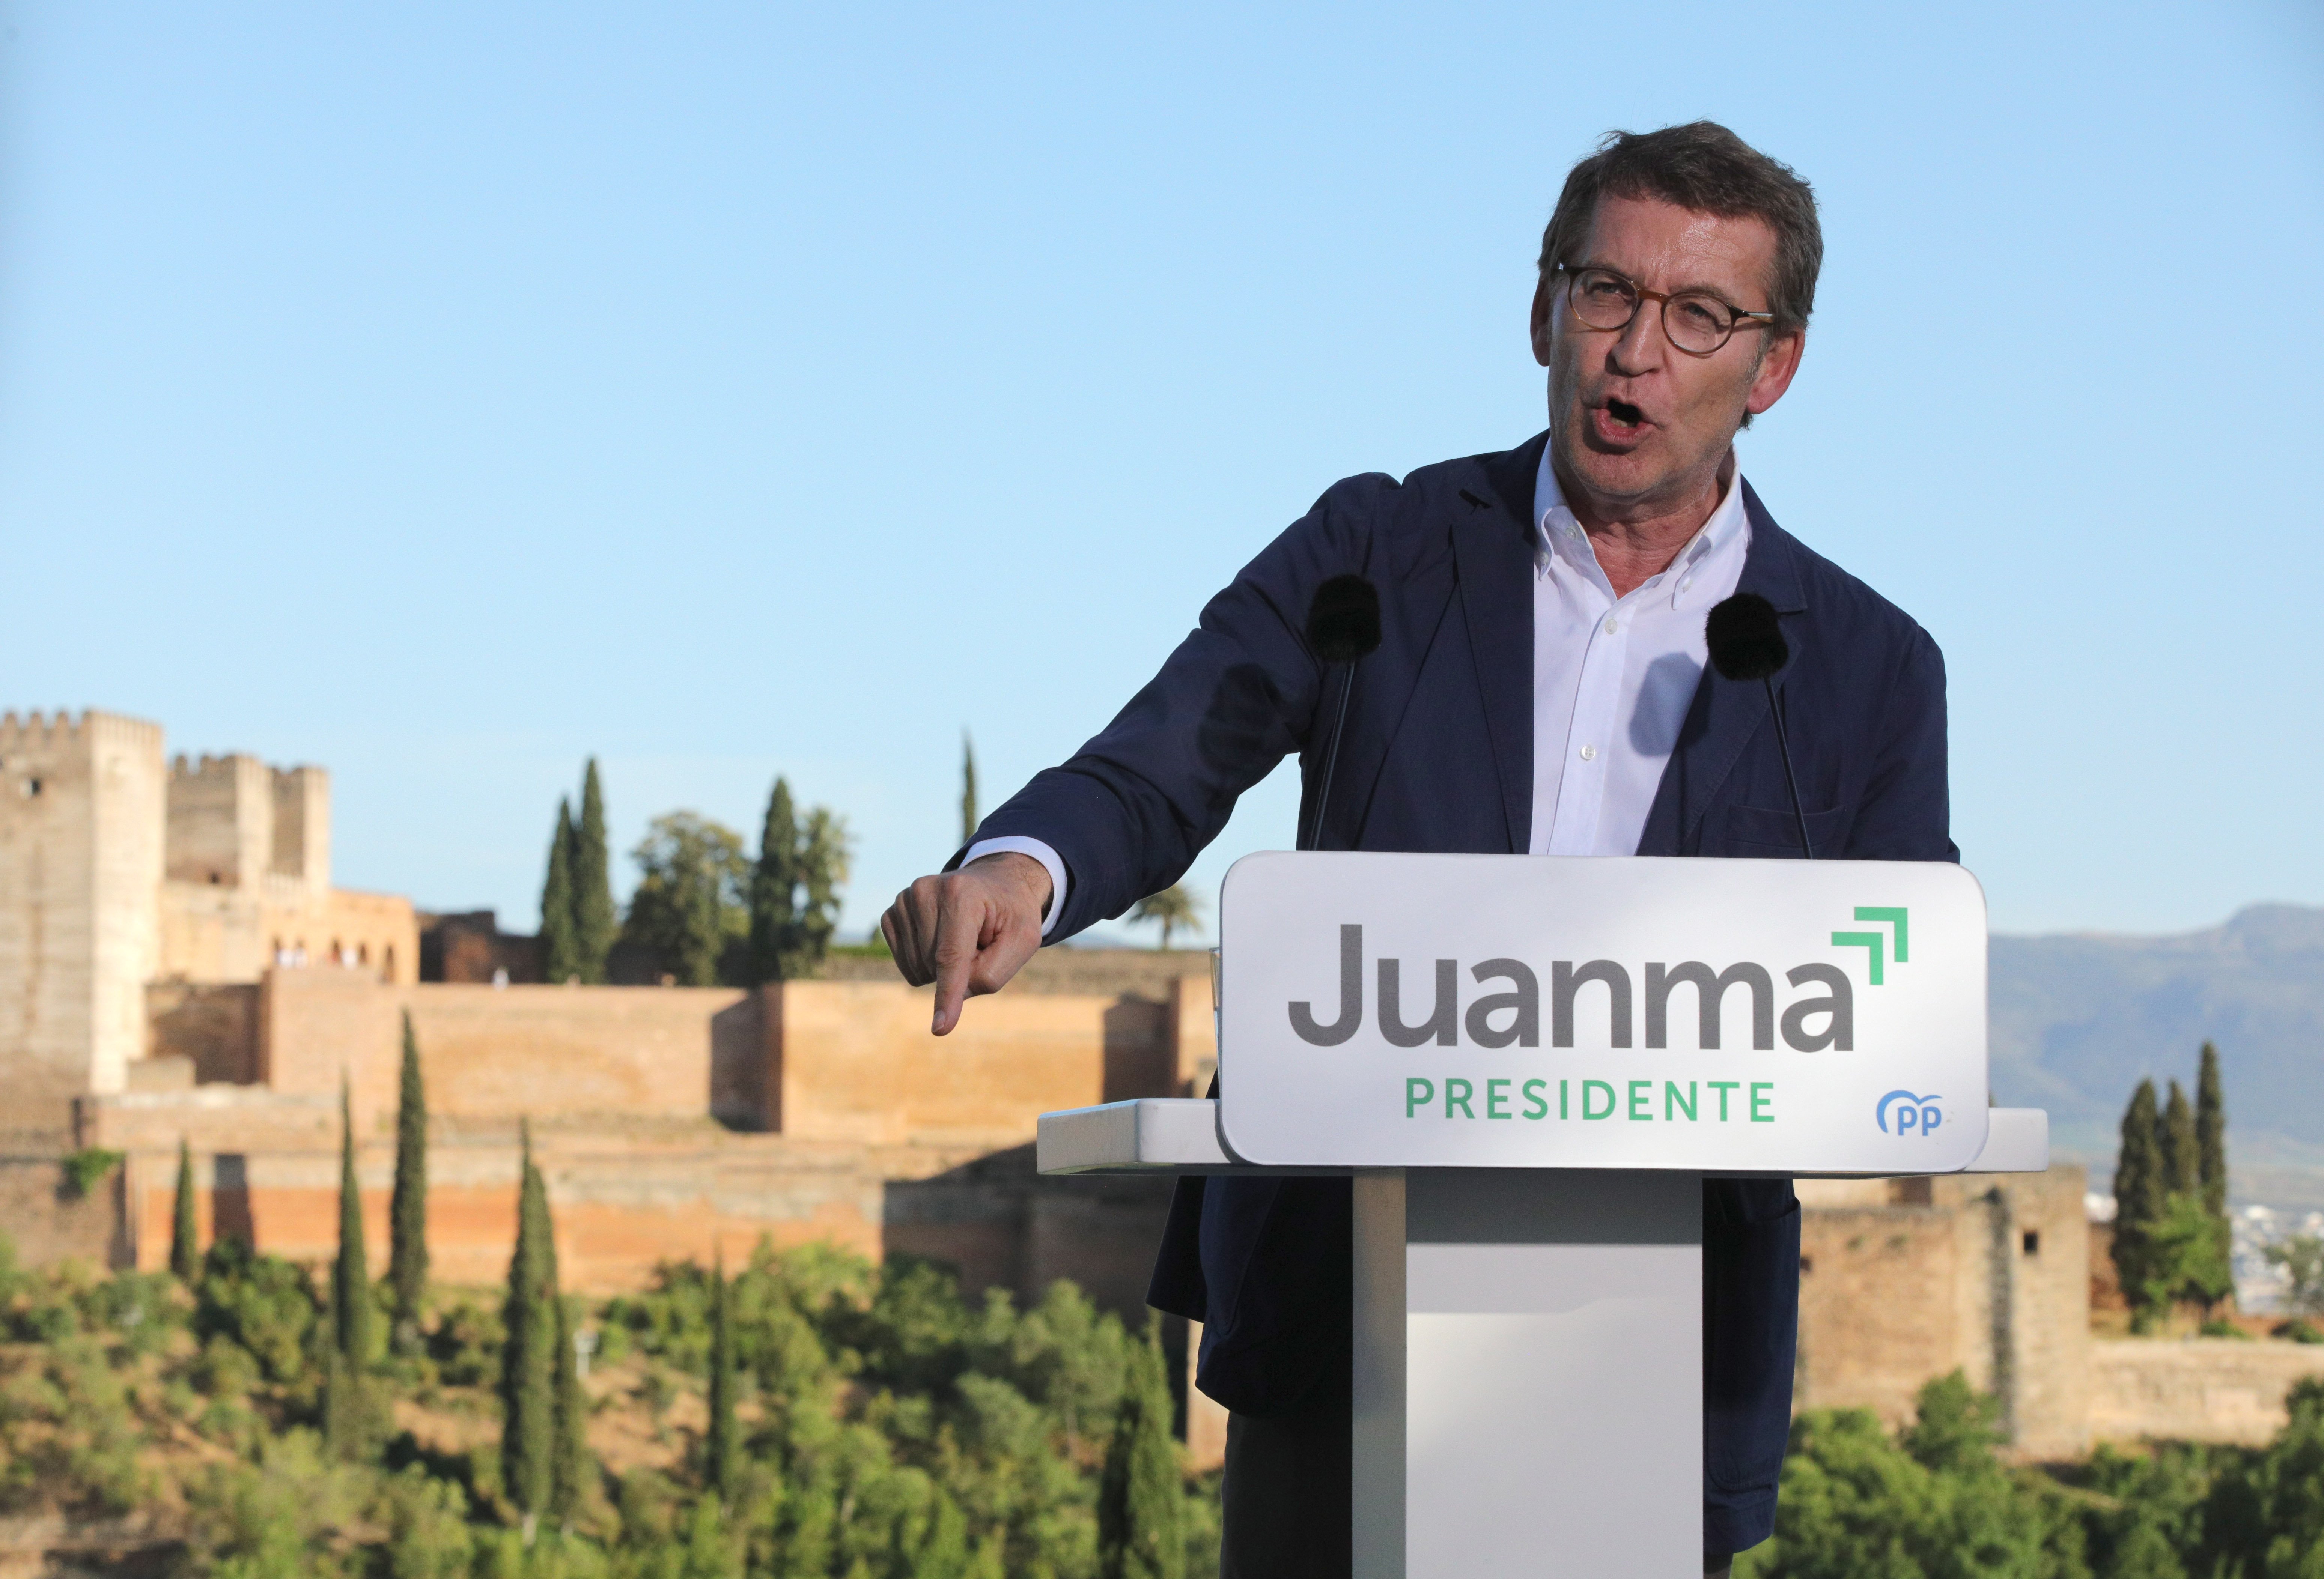 Agria discusión entre PSOE y PP por la puesta de sol en La Alhambra de Granada